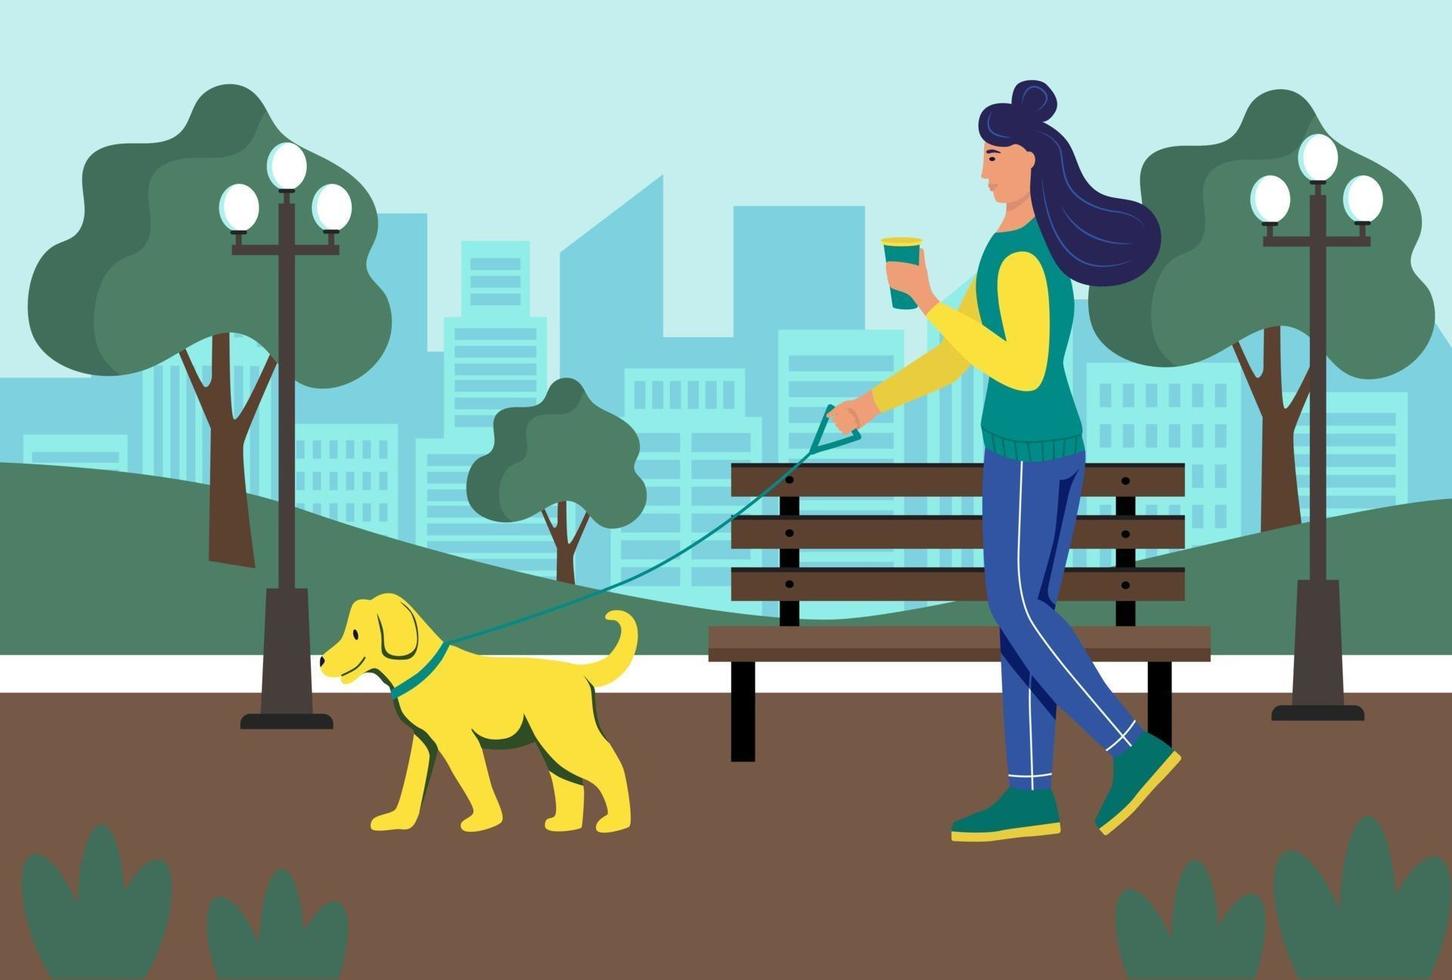 una giovane donna con un bicchiere di caffè in mano cammina con il suo cane nel parco. stile di vita, paesaggio urbano, parco estivo. illustrazione vettoriale di cartone animato piatto.